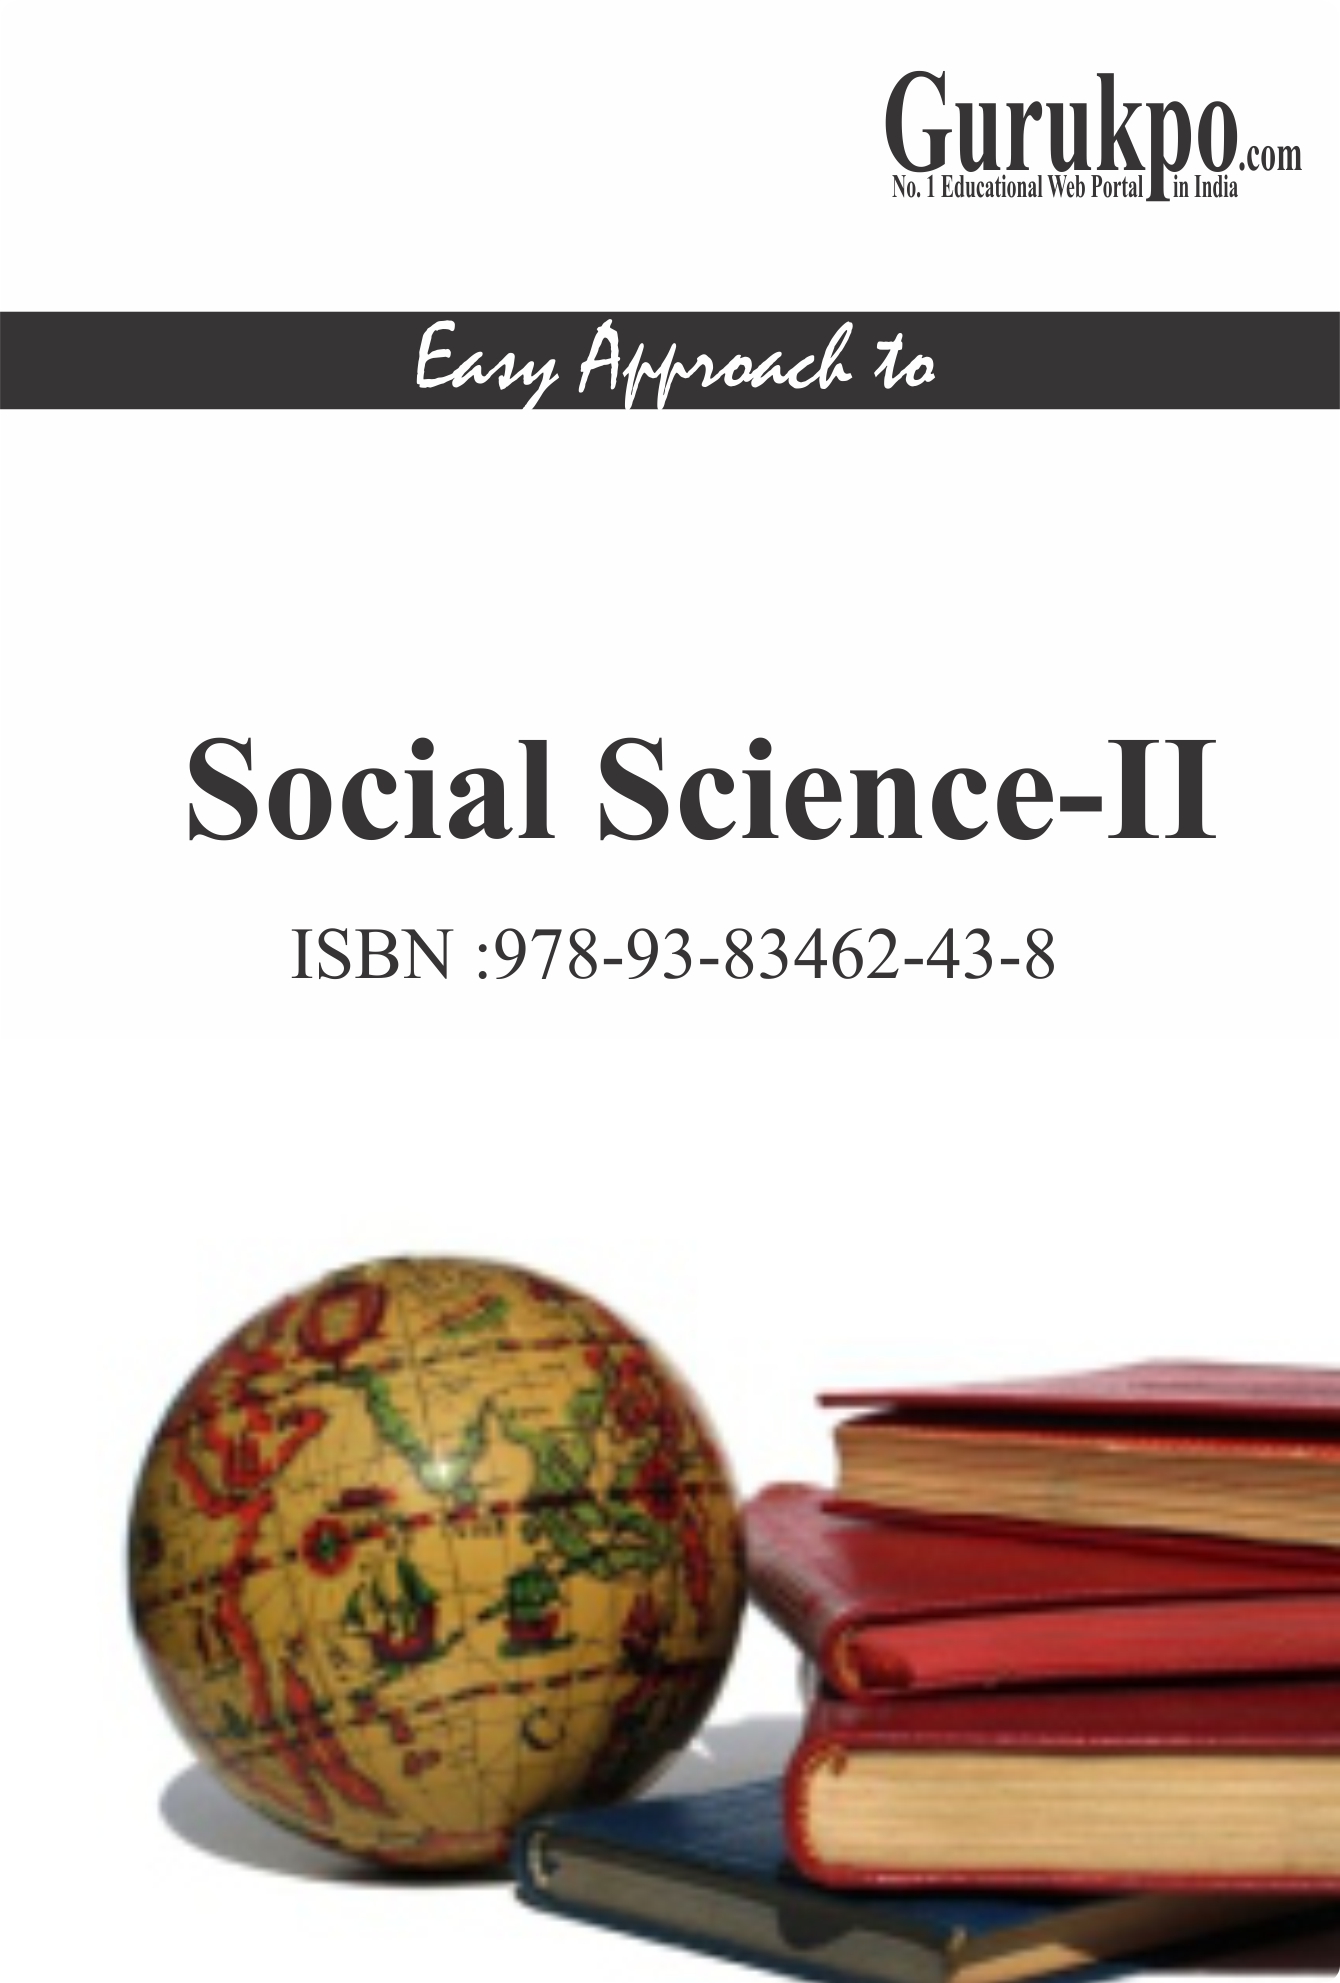 Social science – II